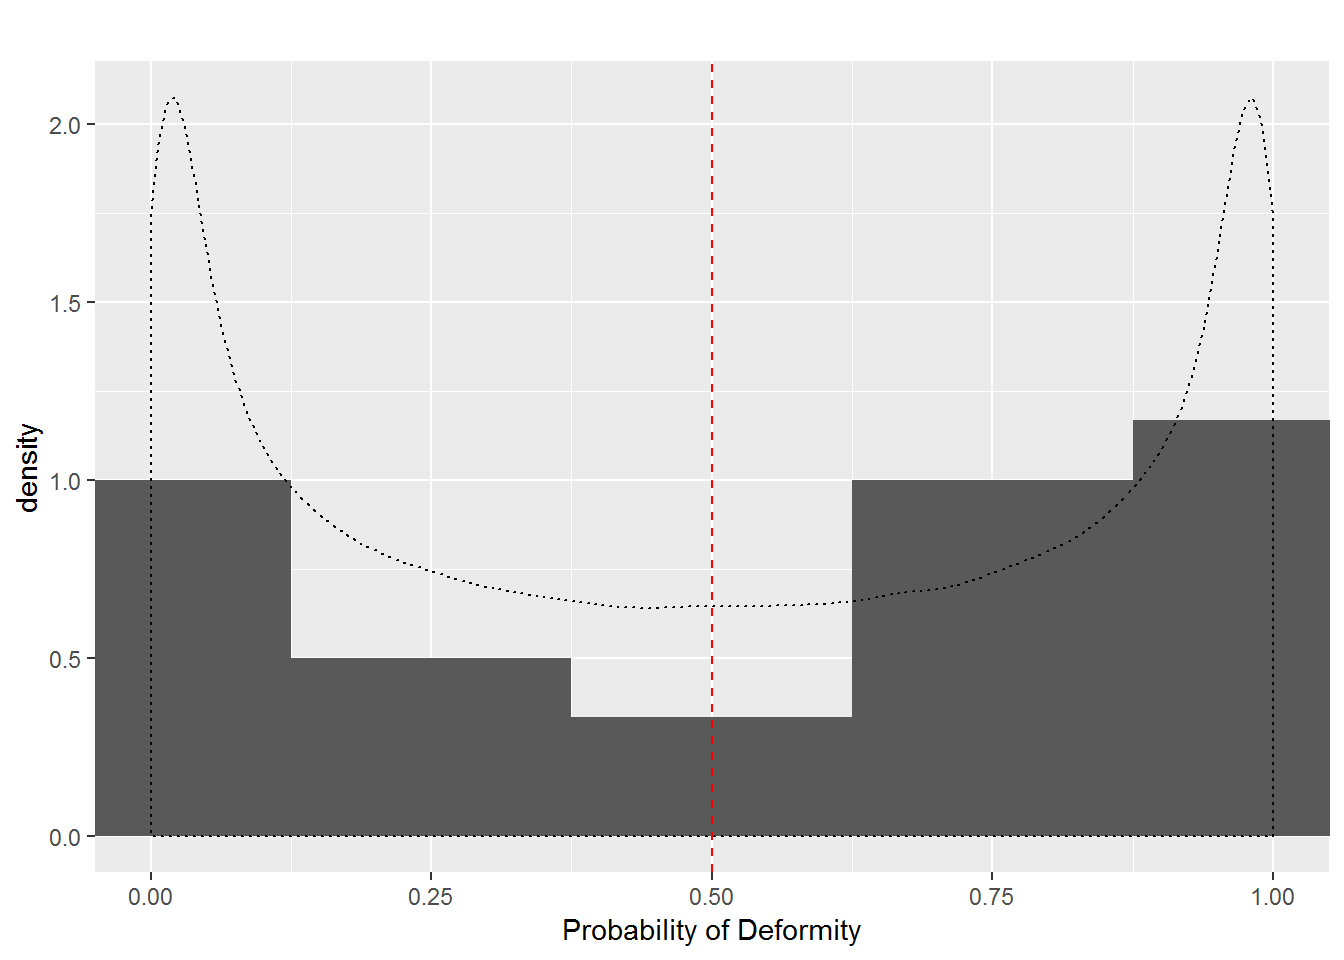 Dam Probabilities in Scenario 1